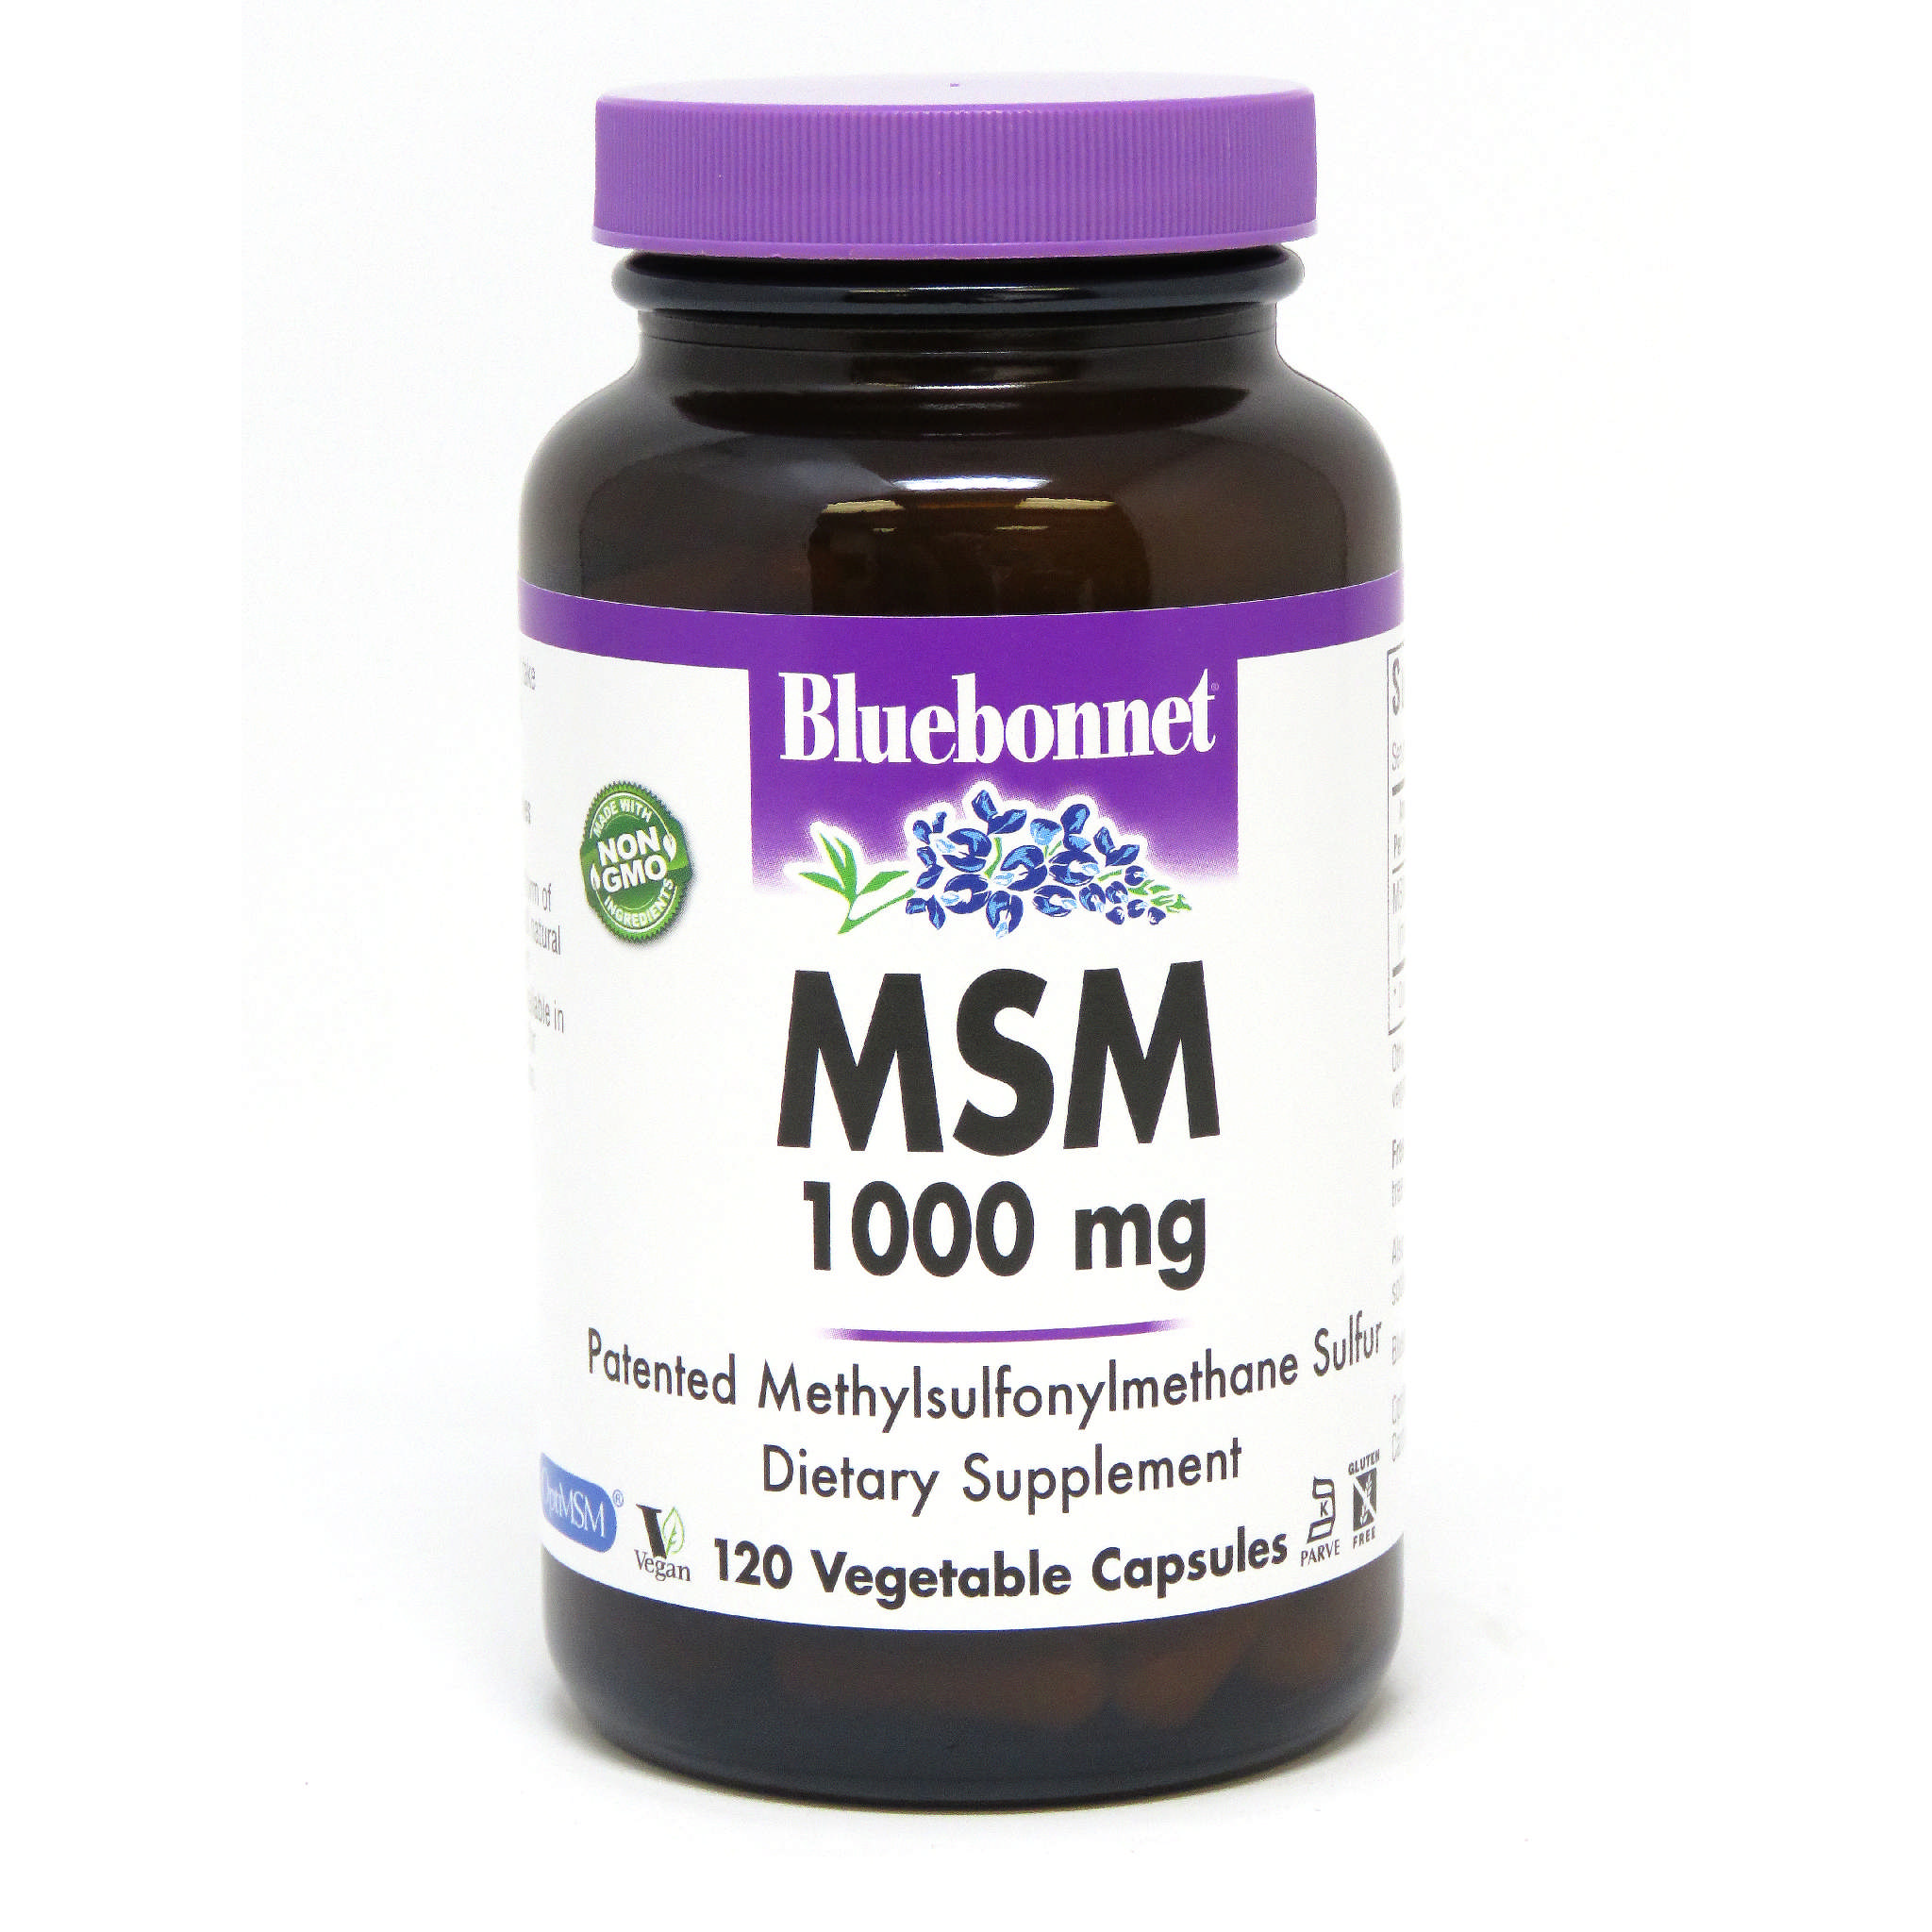 Bluebonnet - Msm 1000 mg